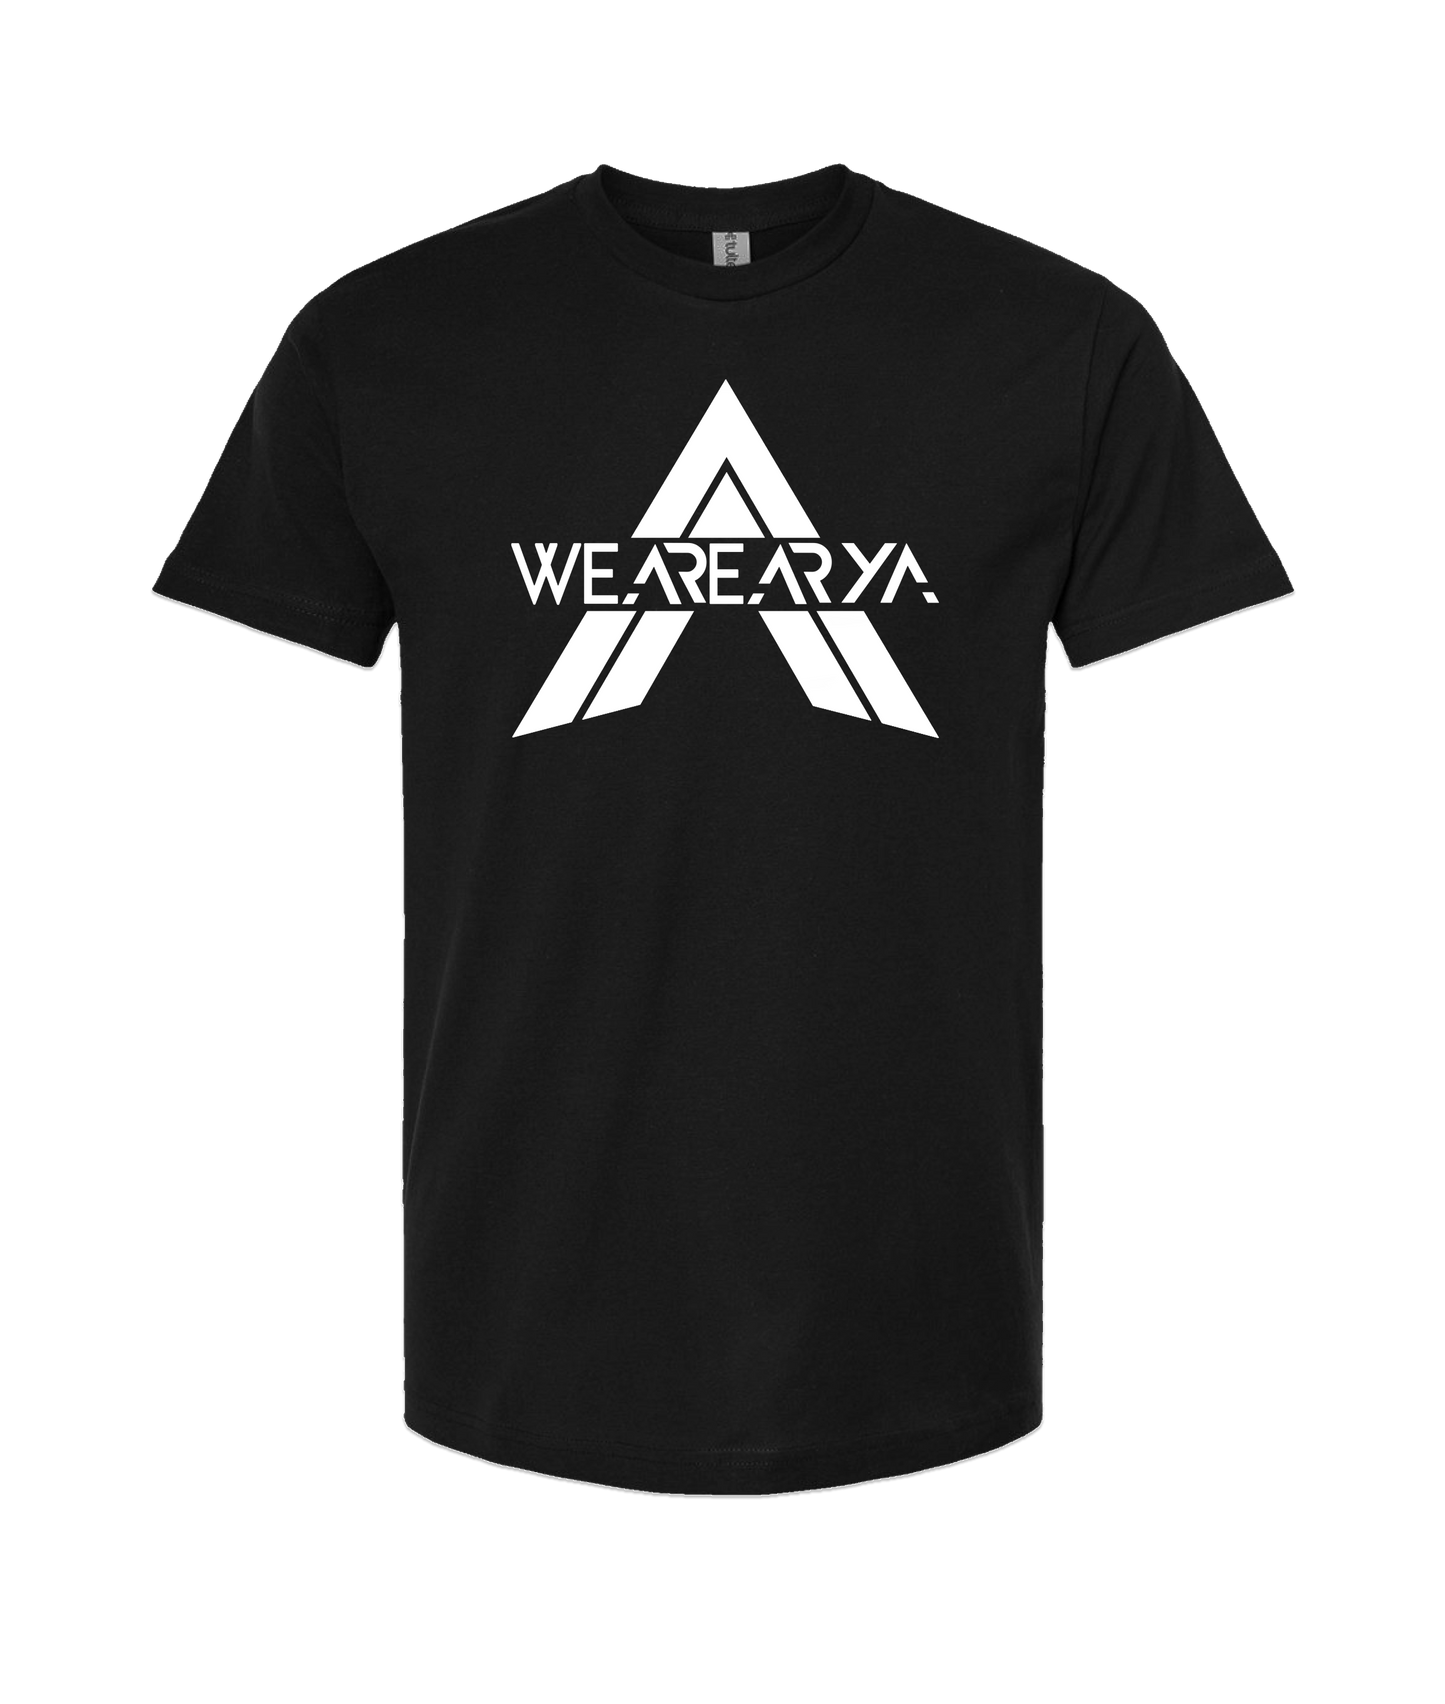 We Are Arya - Emblem - Black T-Shirt